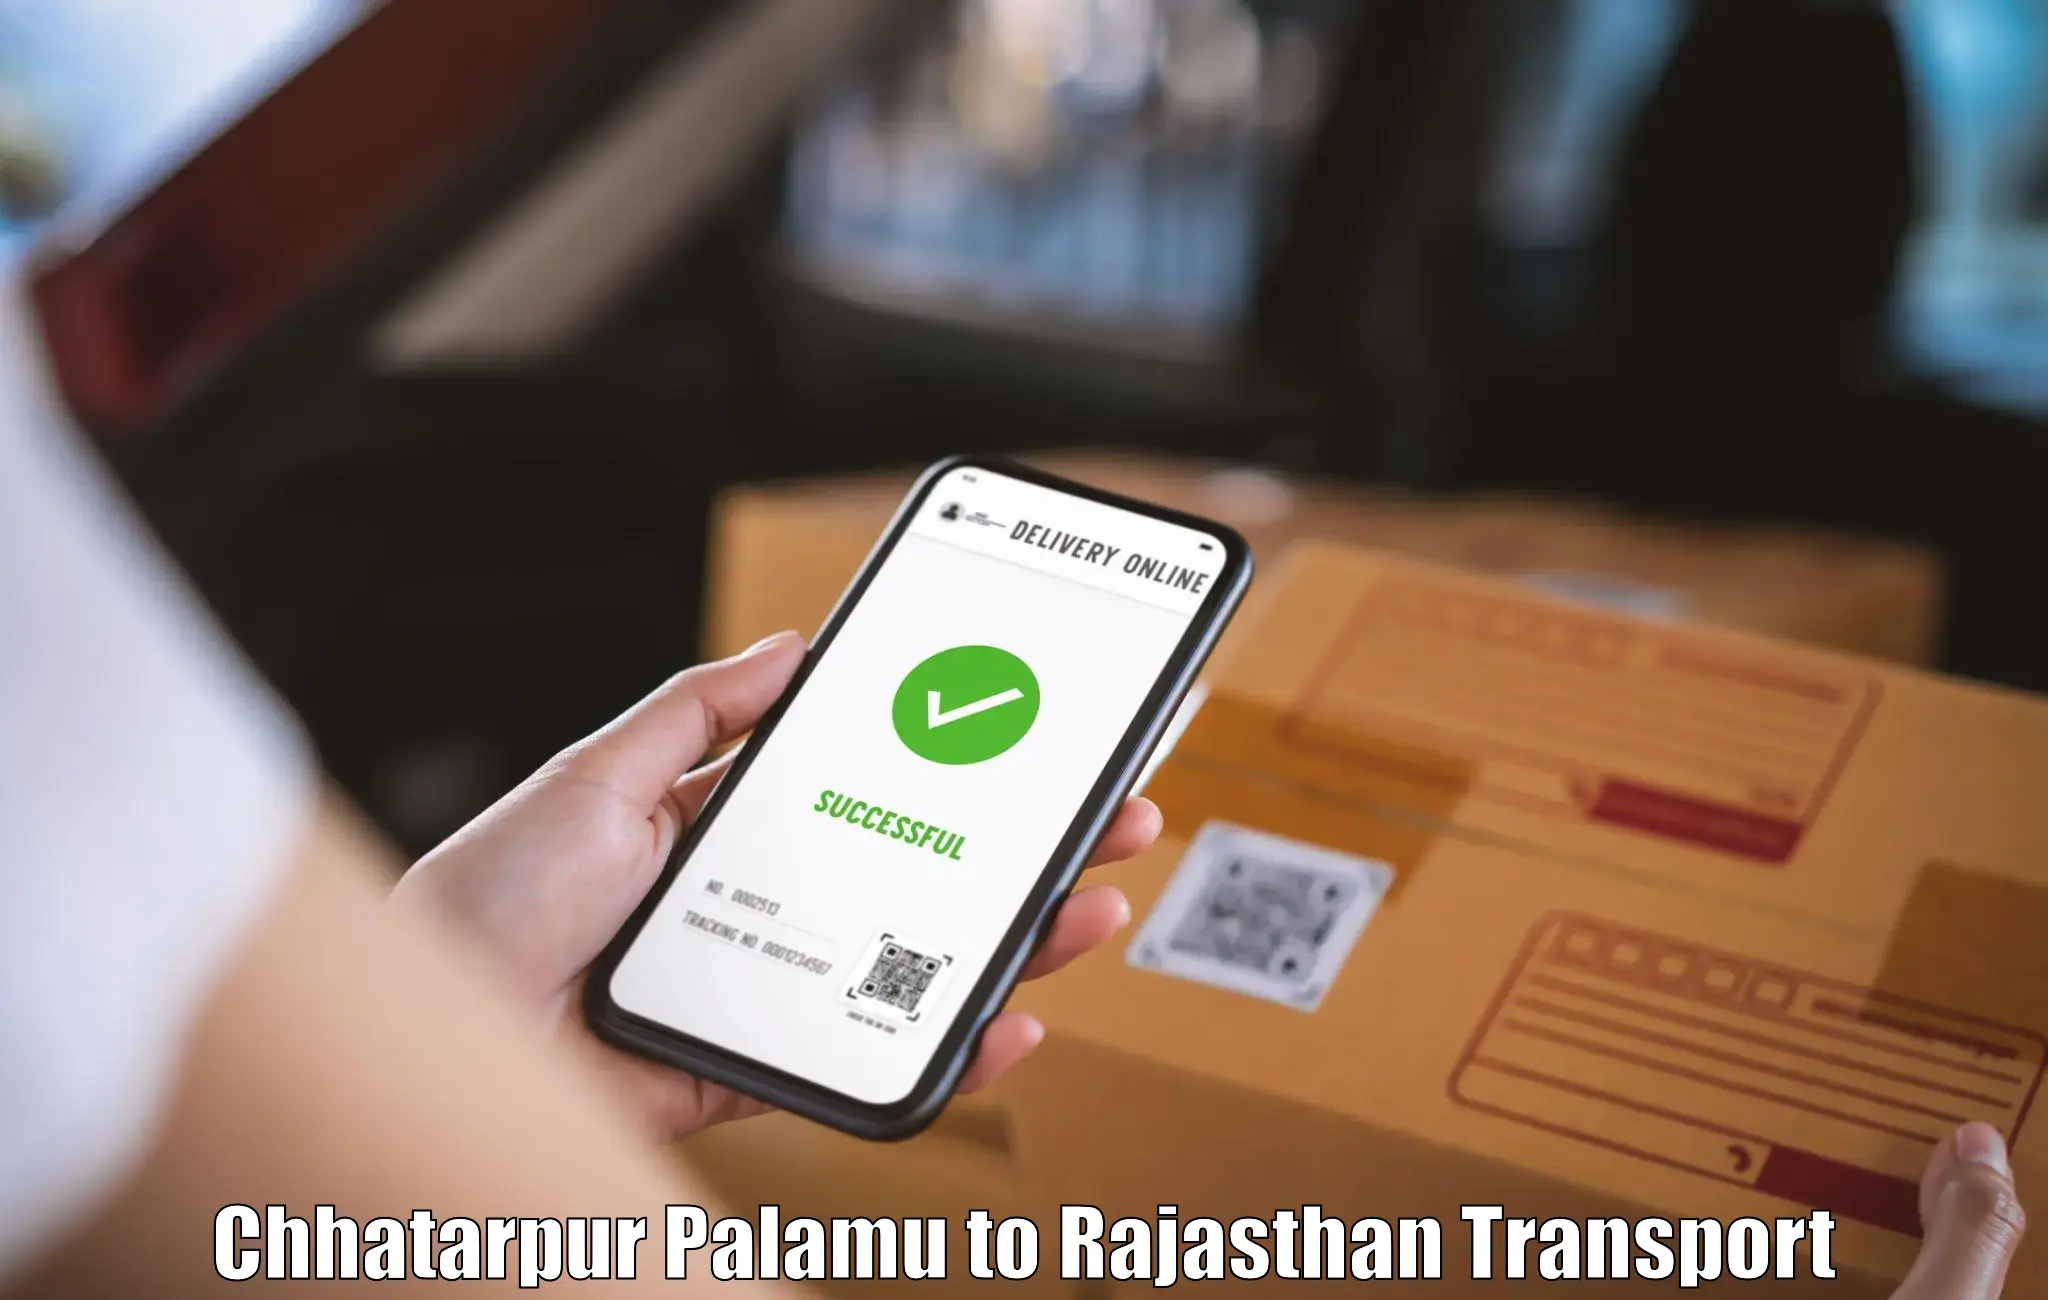 Furniture transport service Chhatarpur Palamu to Chaumahla